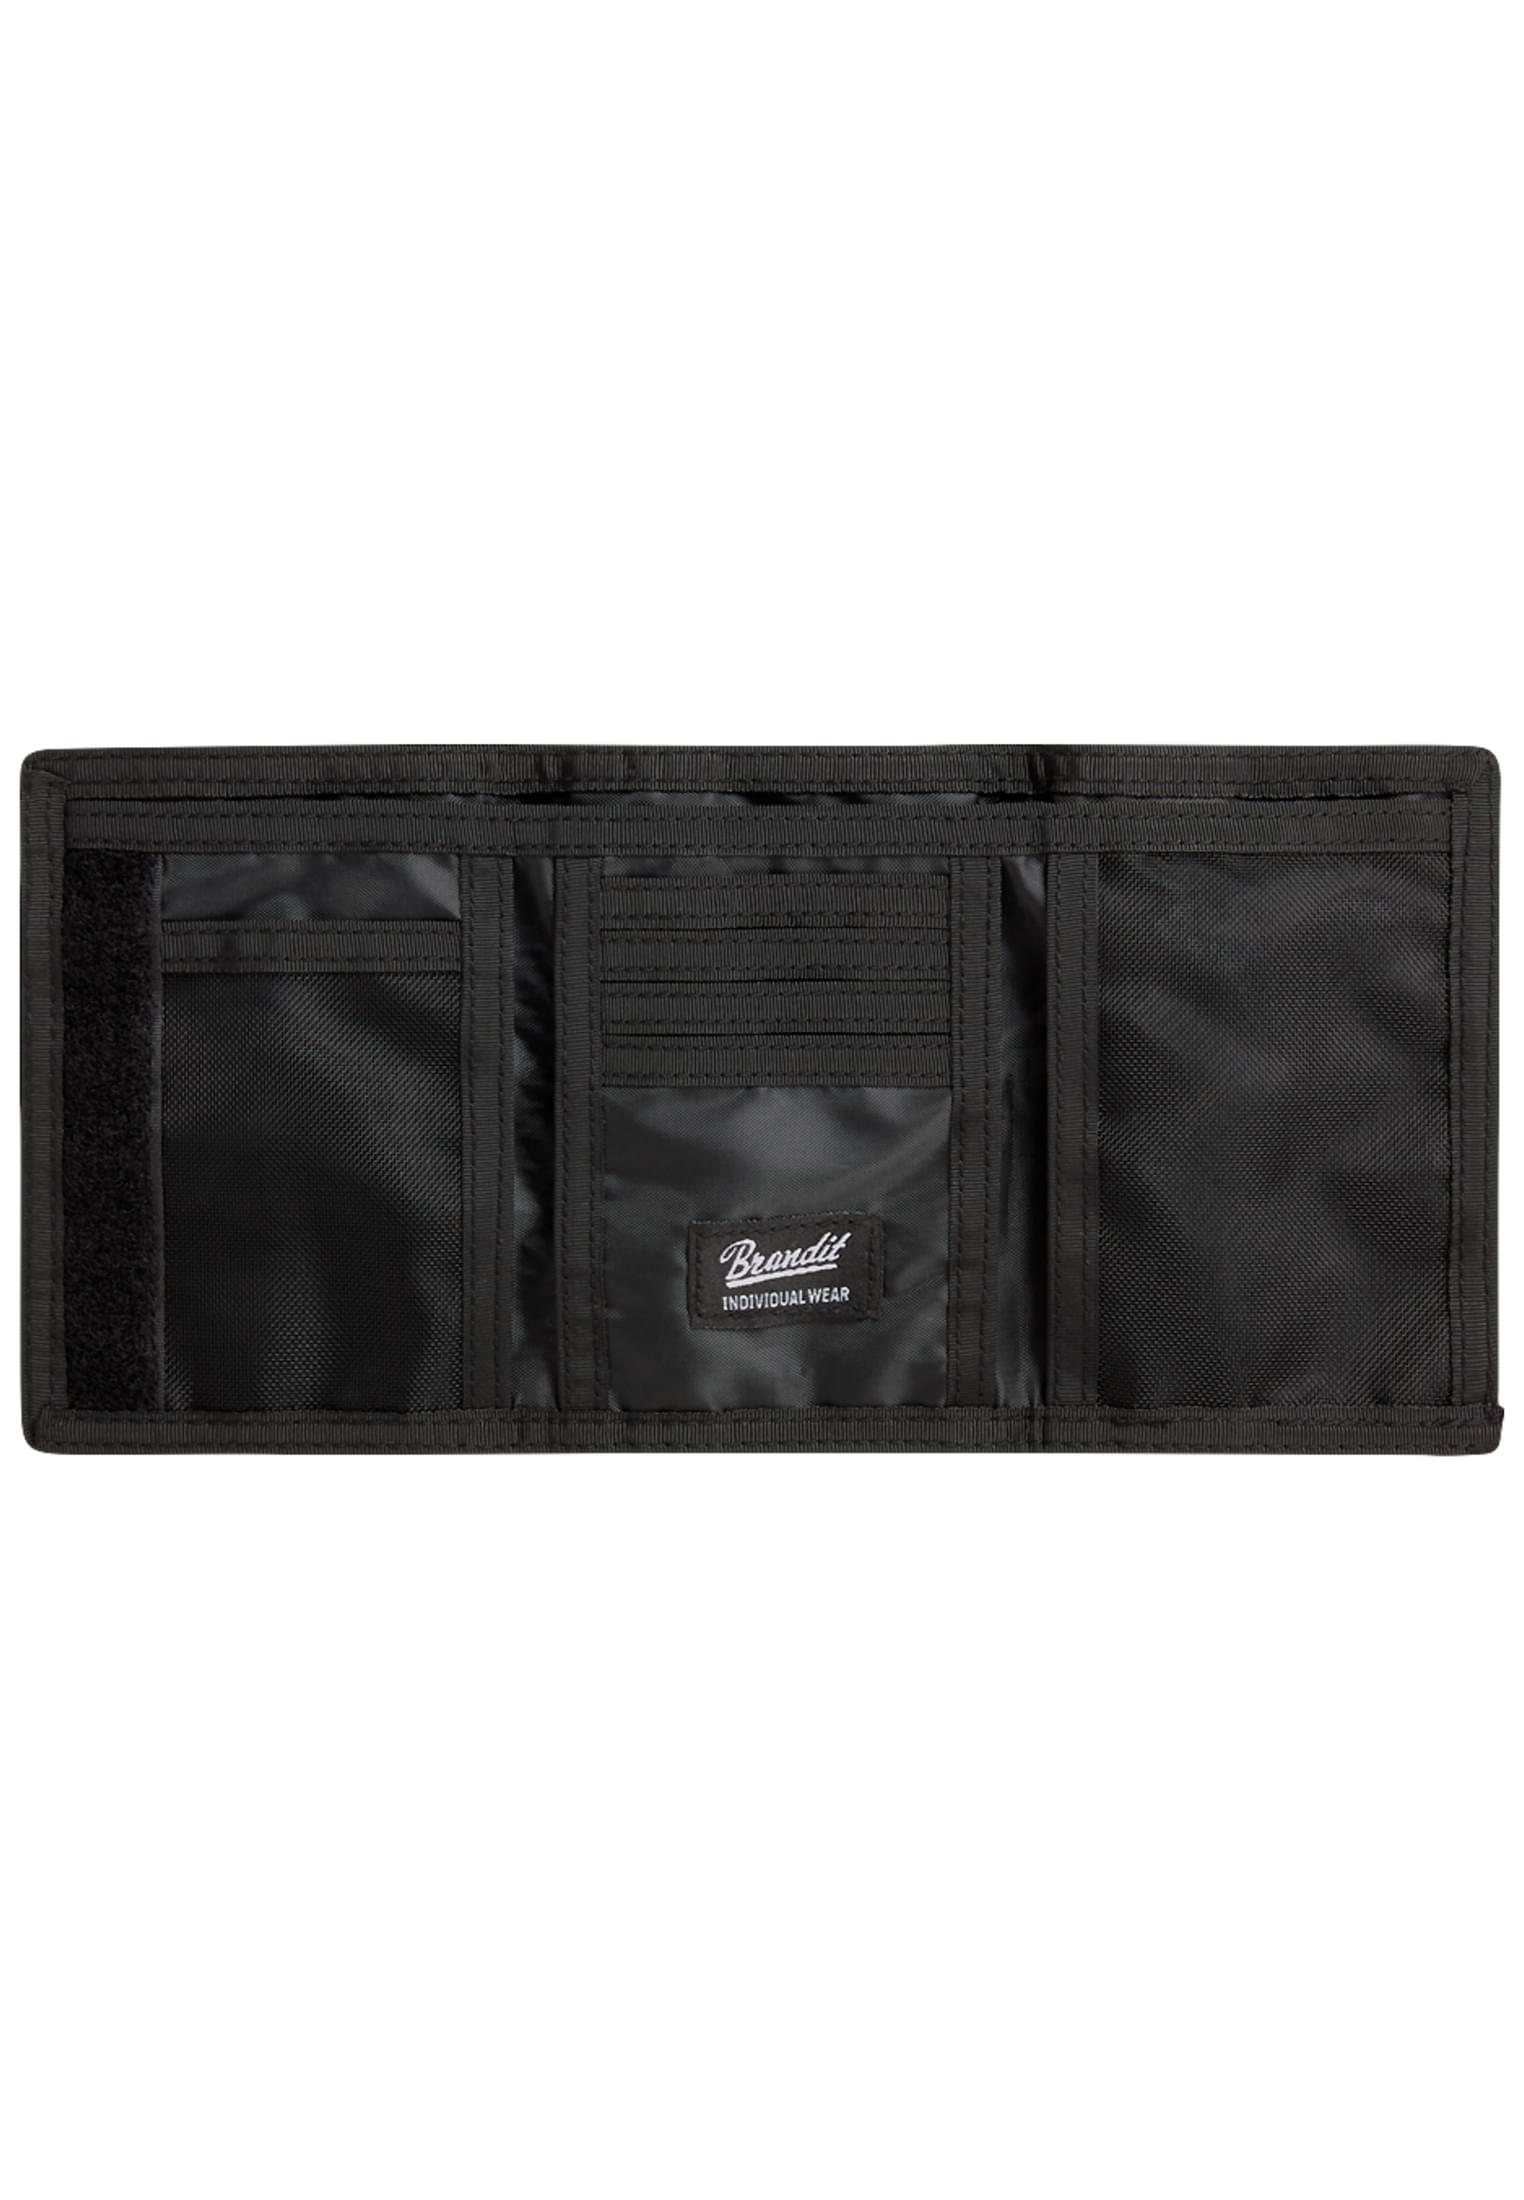 Taschen Wallet Three in Farbe black